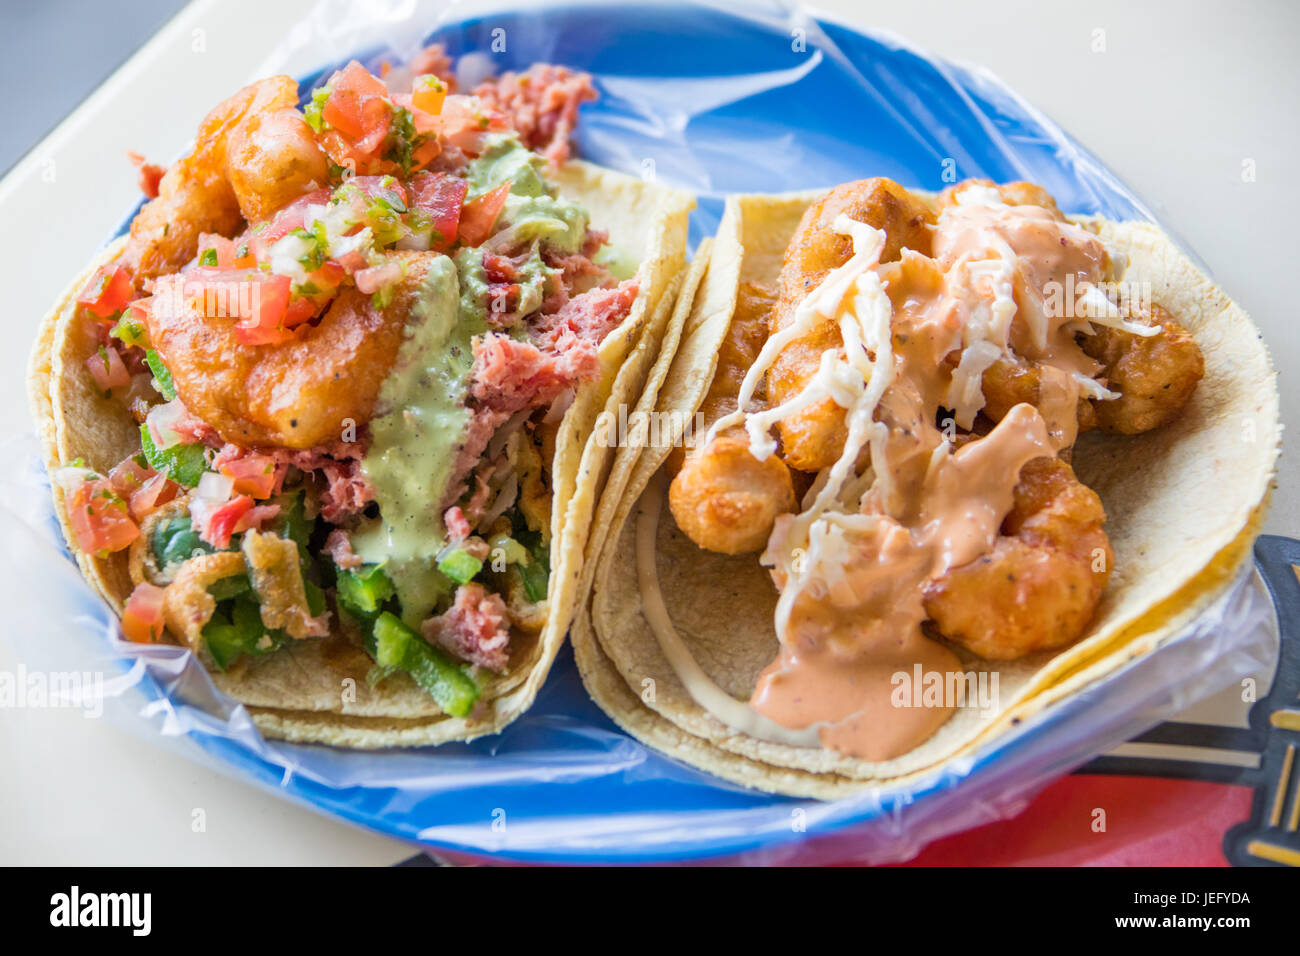 Fish and Shrimp tacos at El Pescadito Restaurant, Mexico City, Mexico Stock Photo